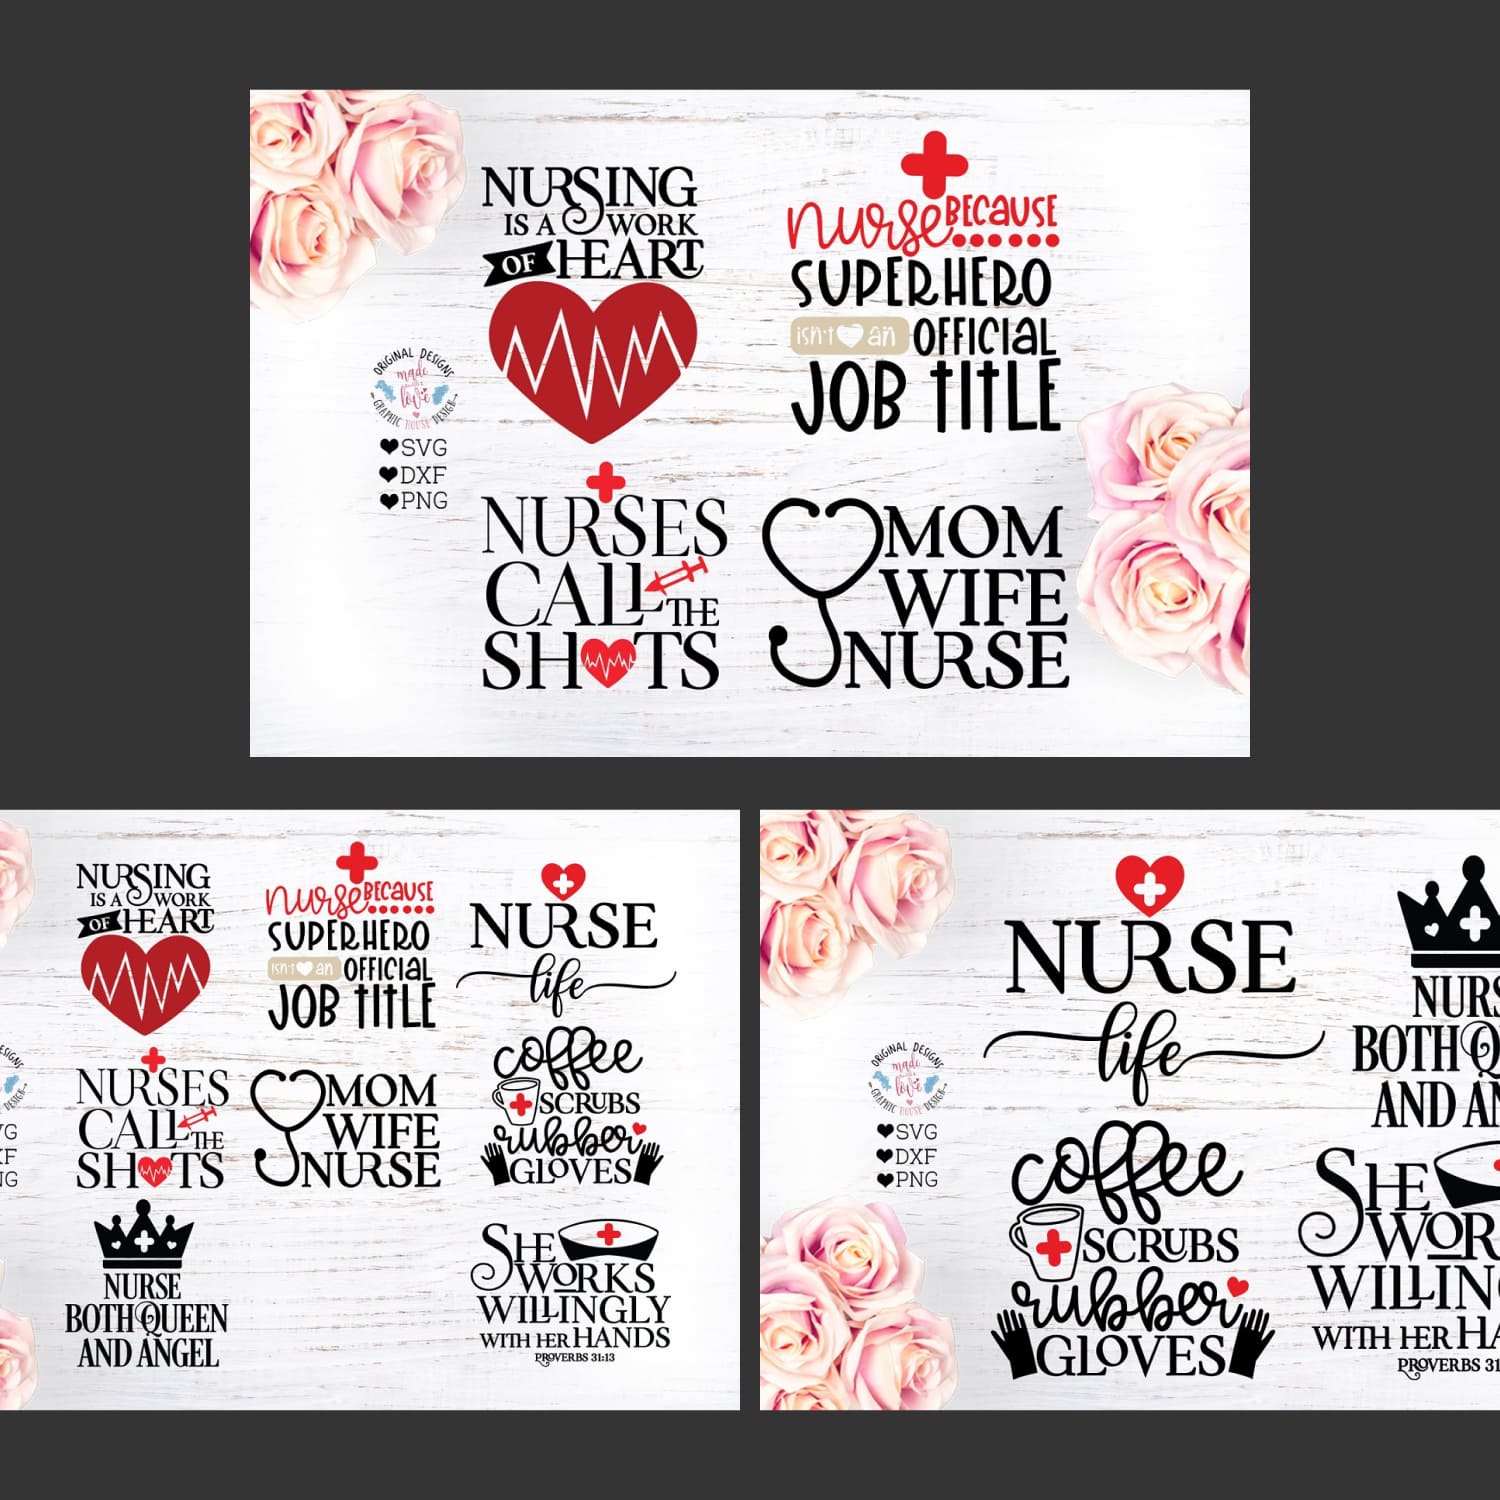 Nurse SVG - Nursing Quotes Bundle cover.